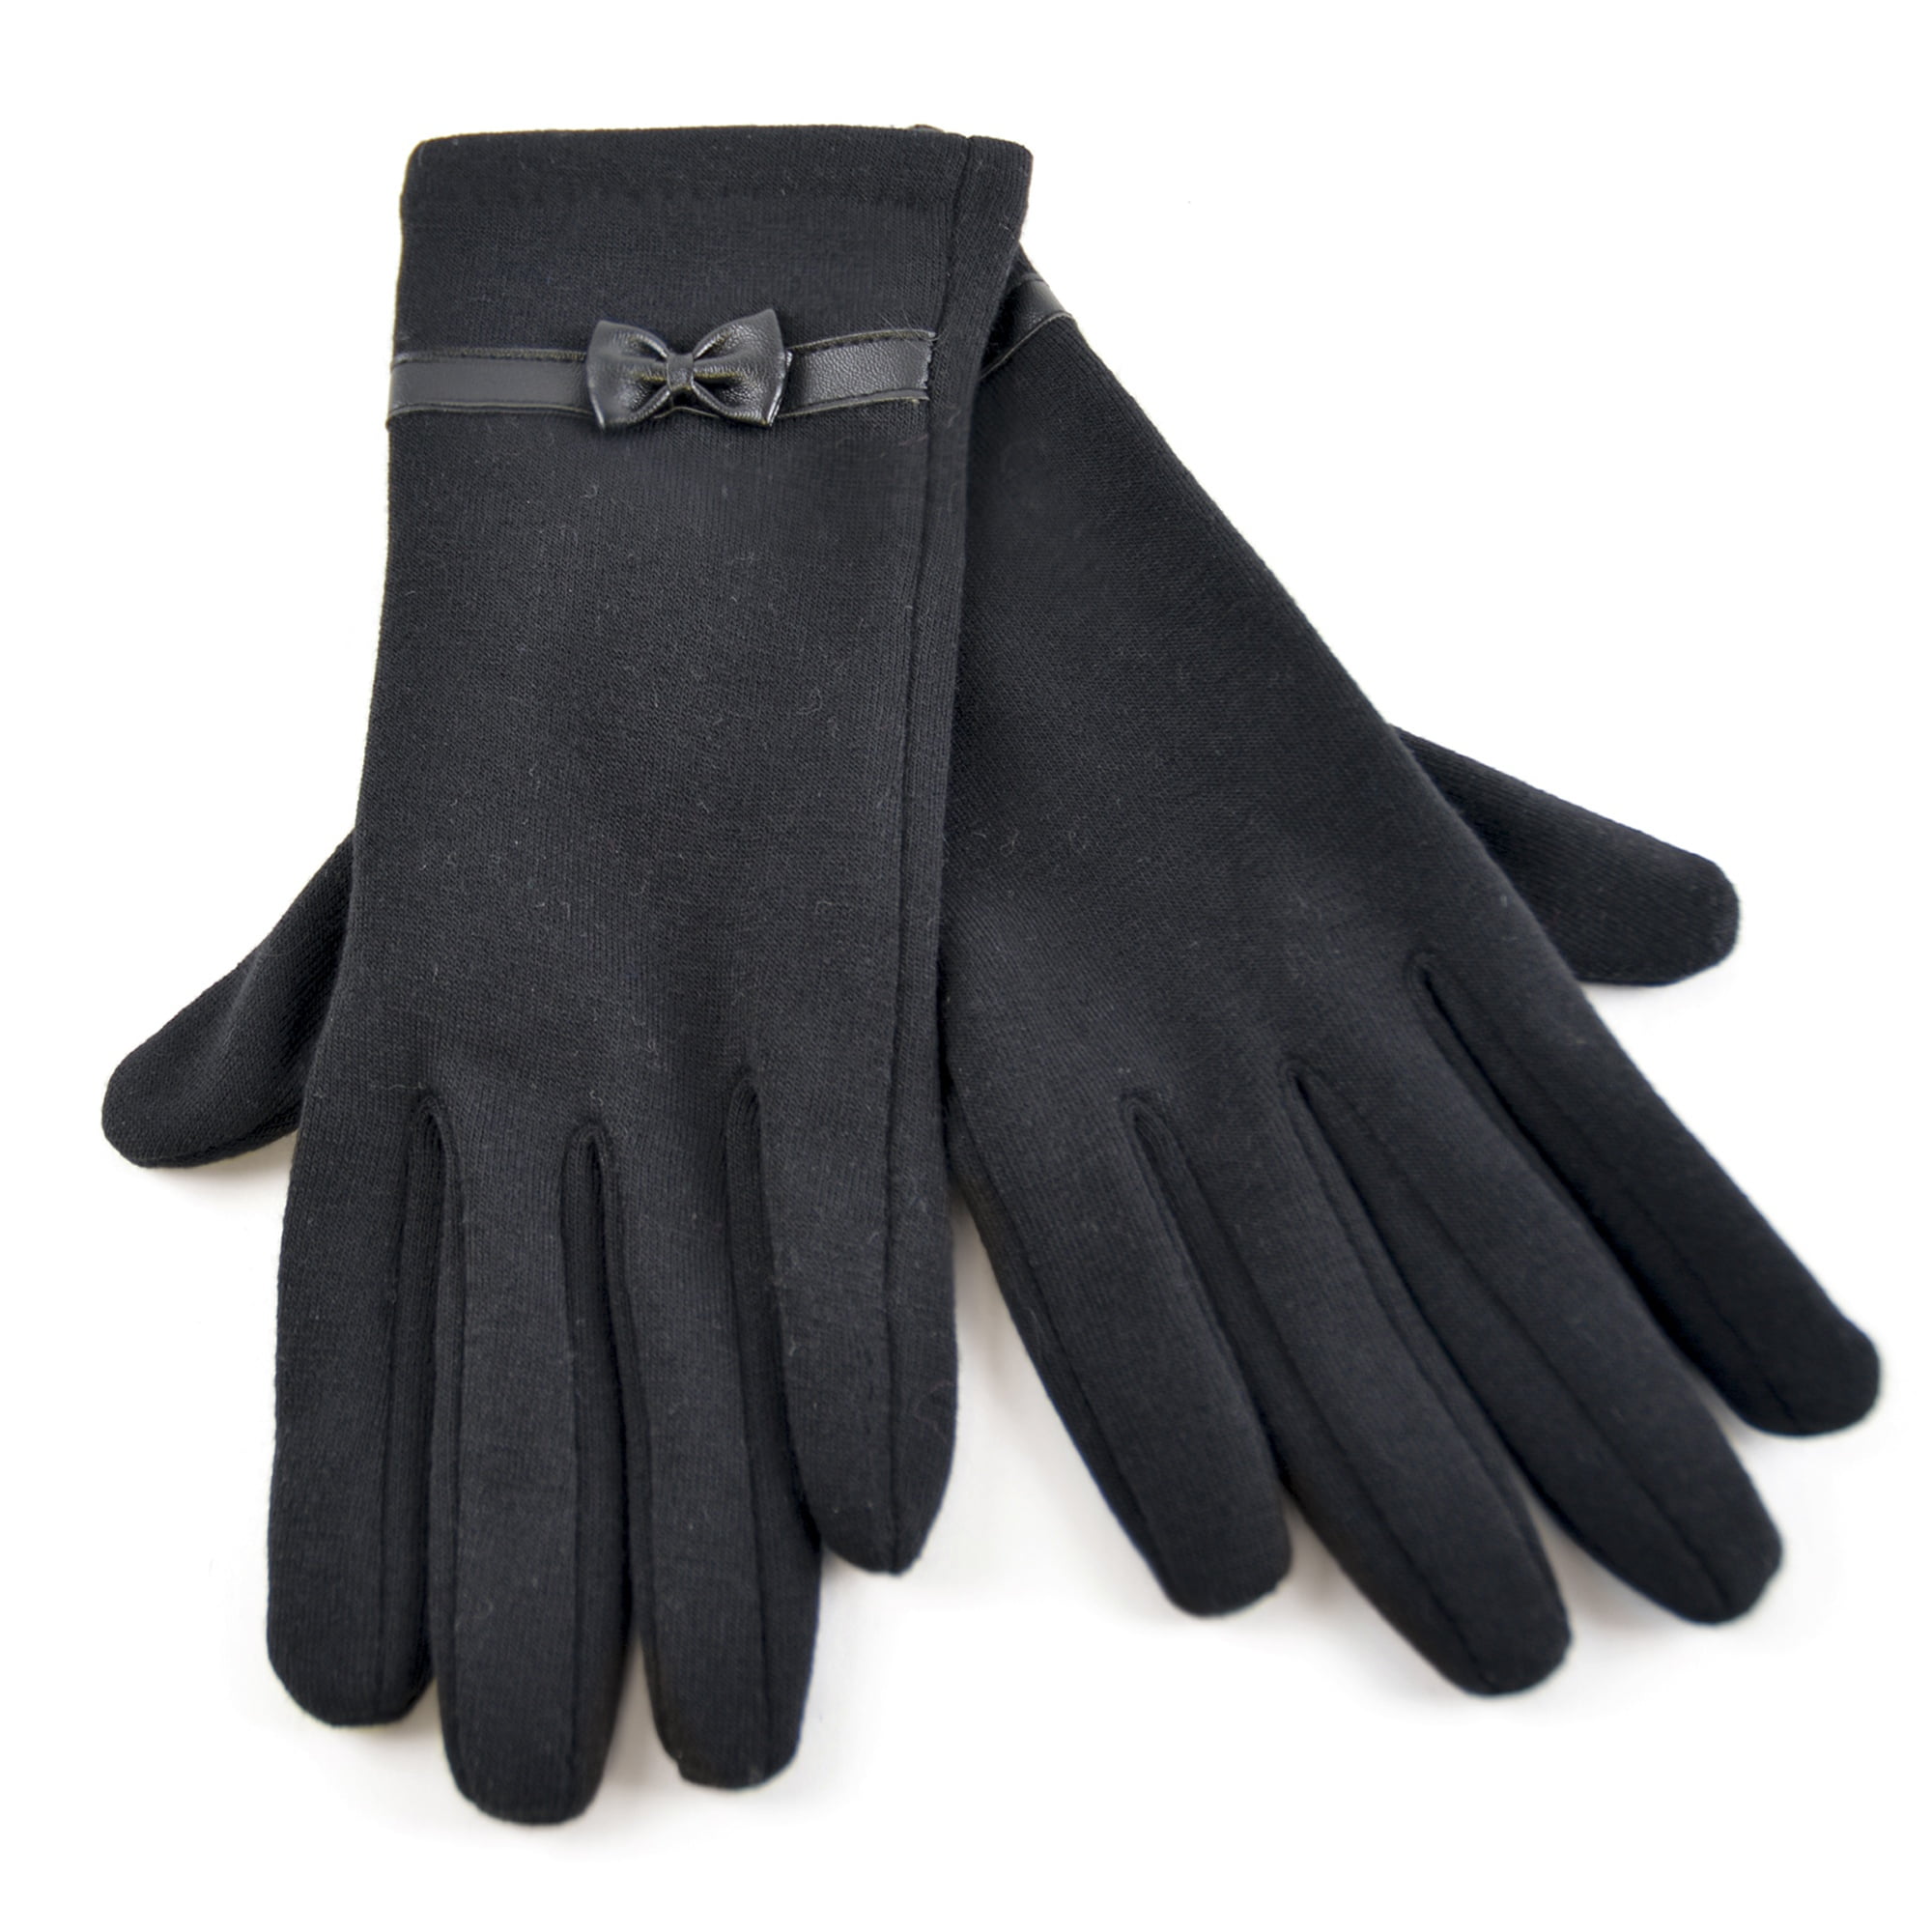 Ladies black gloves uk